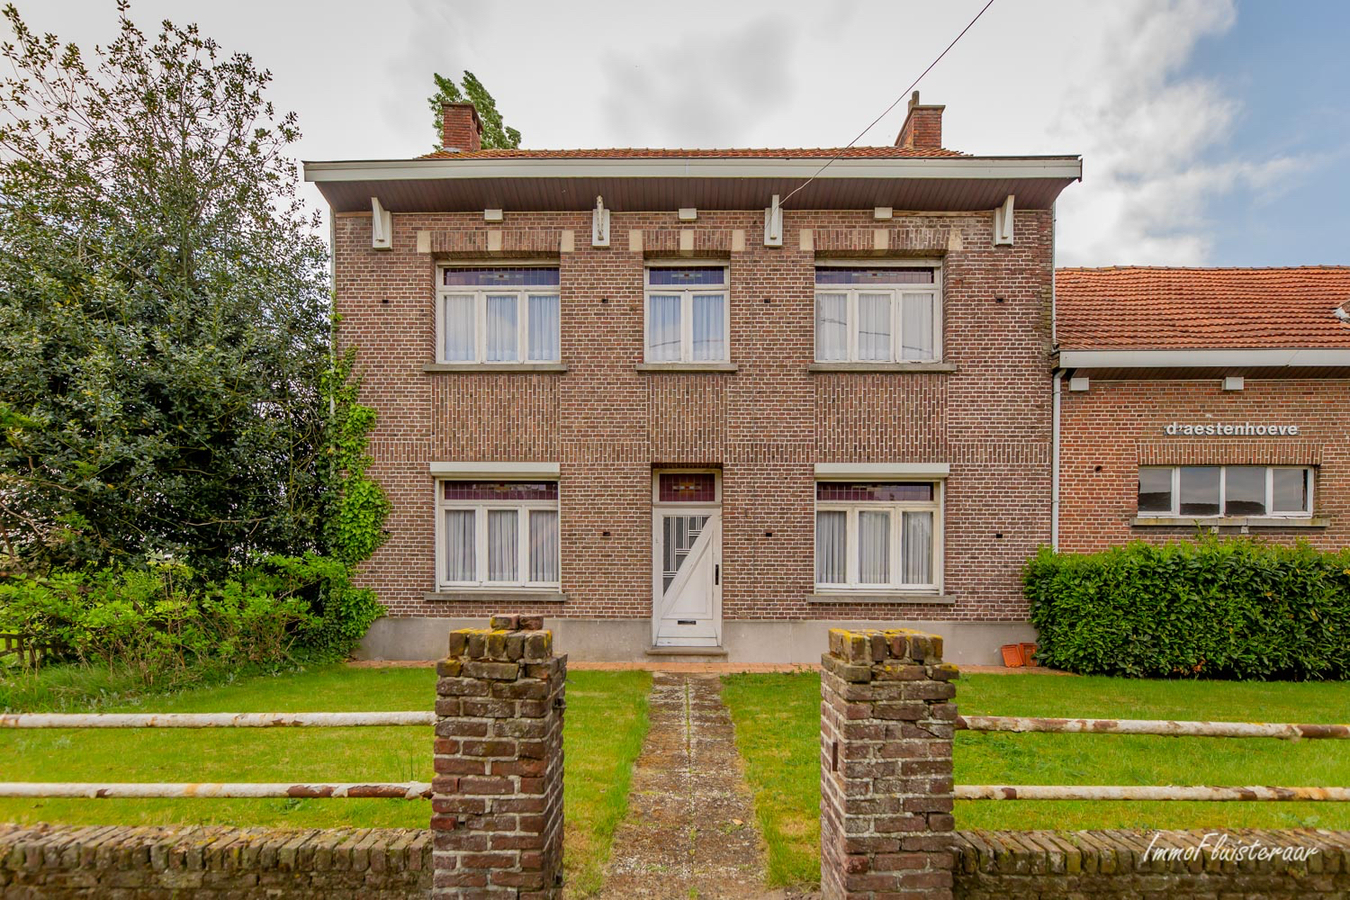 Property for sale in Vlimmeren